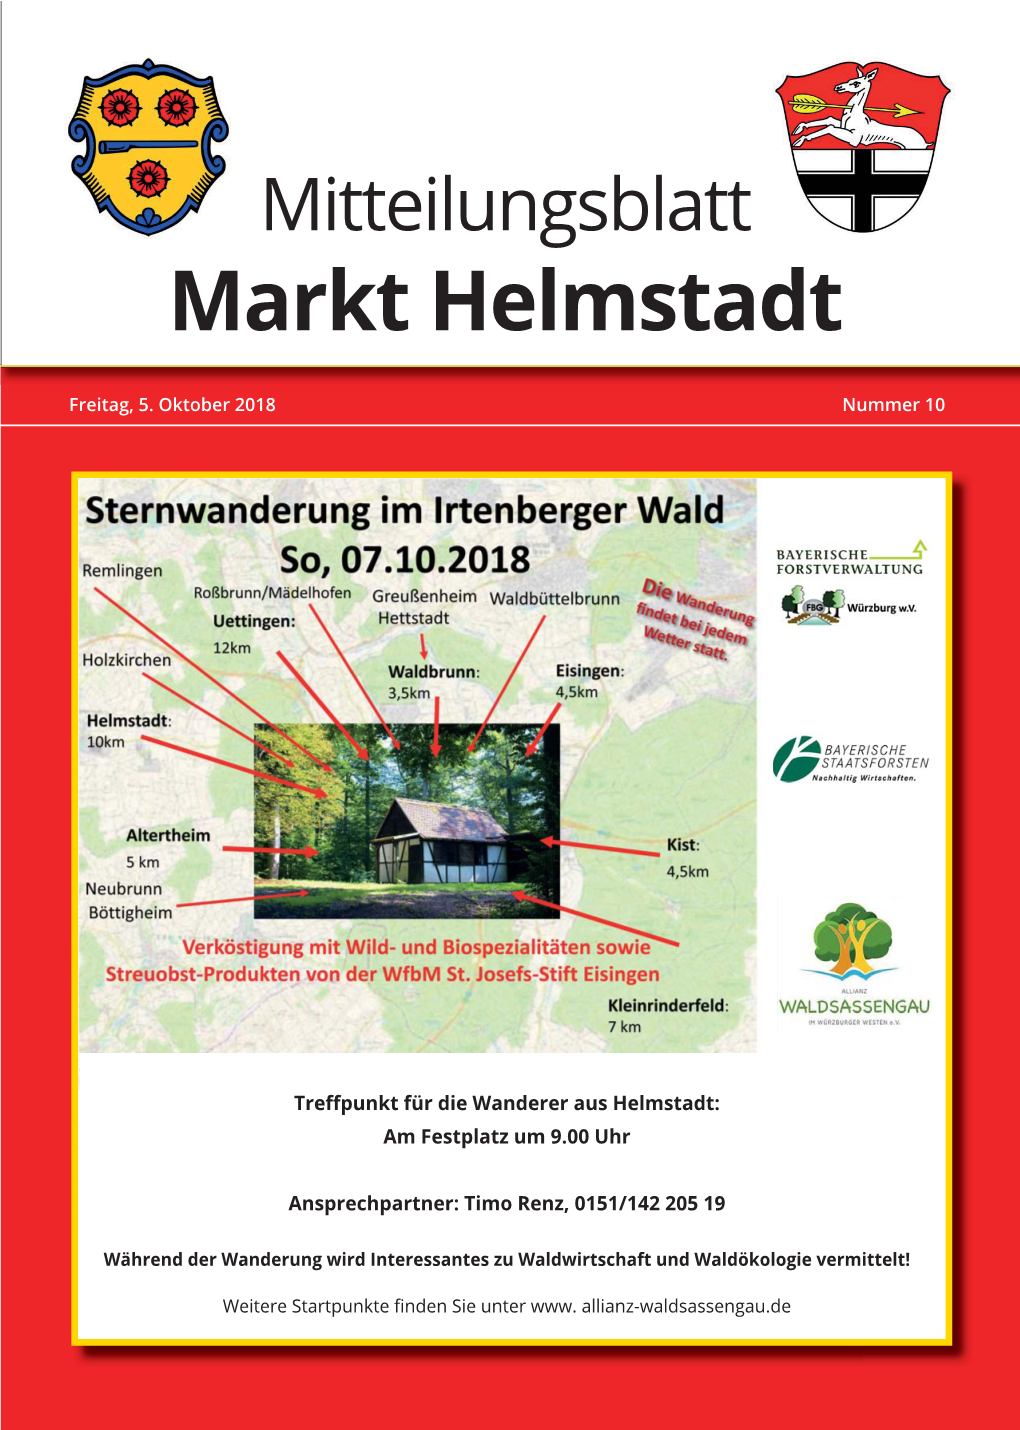 GB-Helmstadt 2018-10.Indd